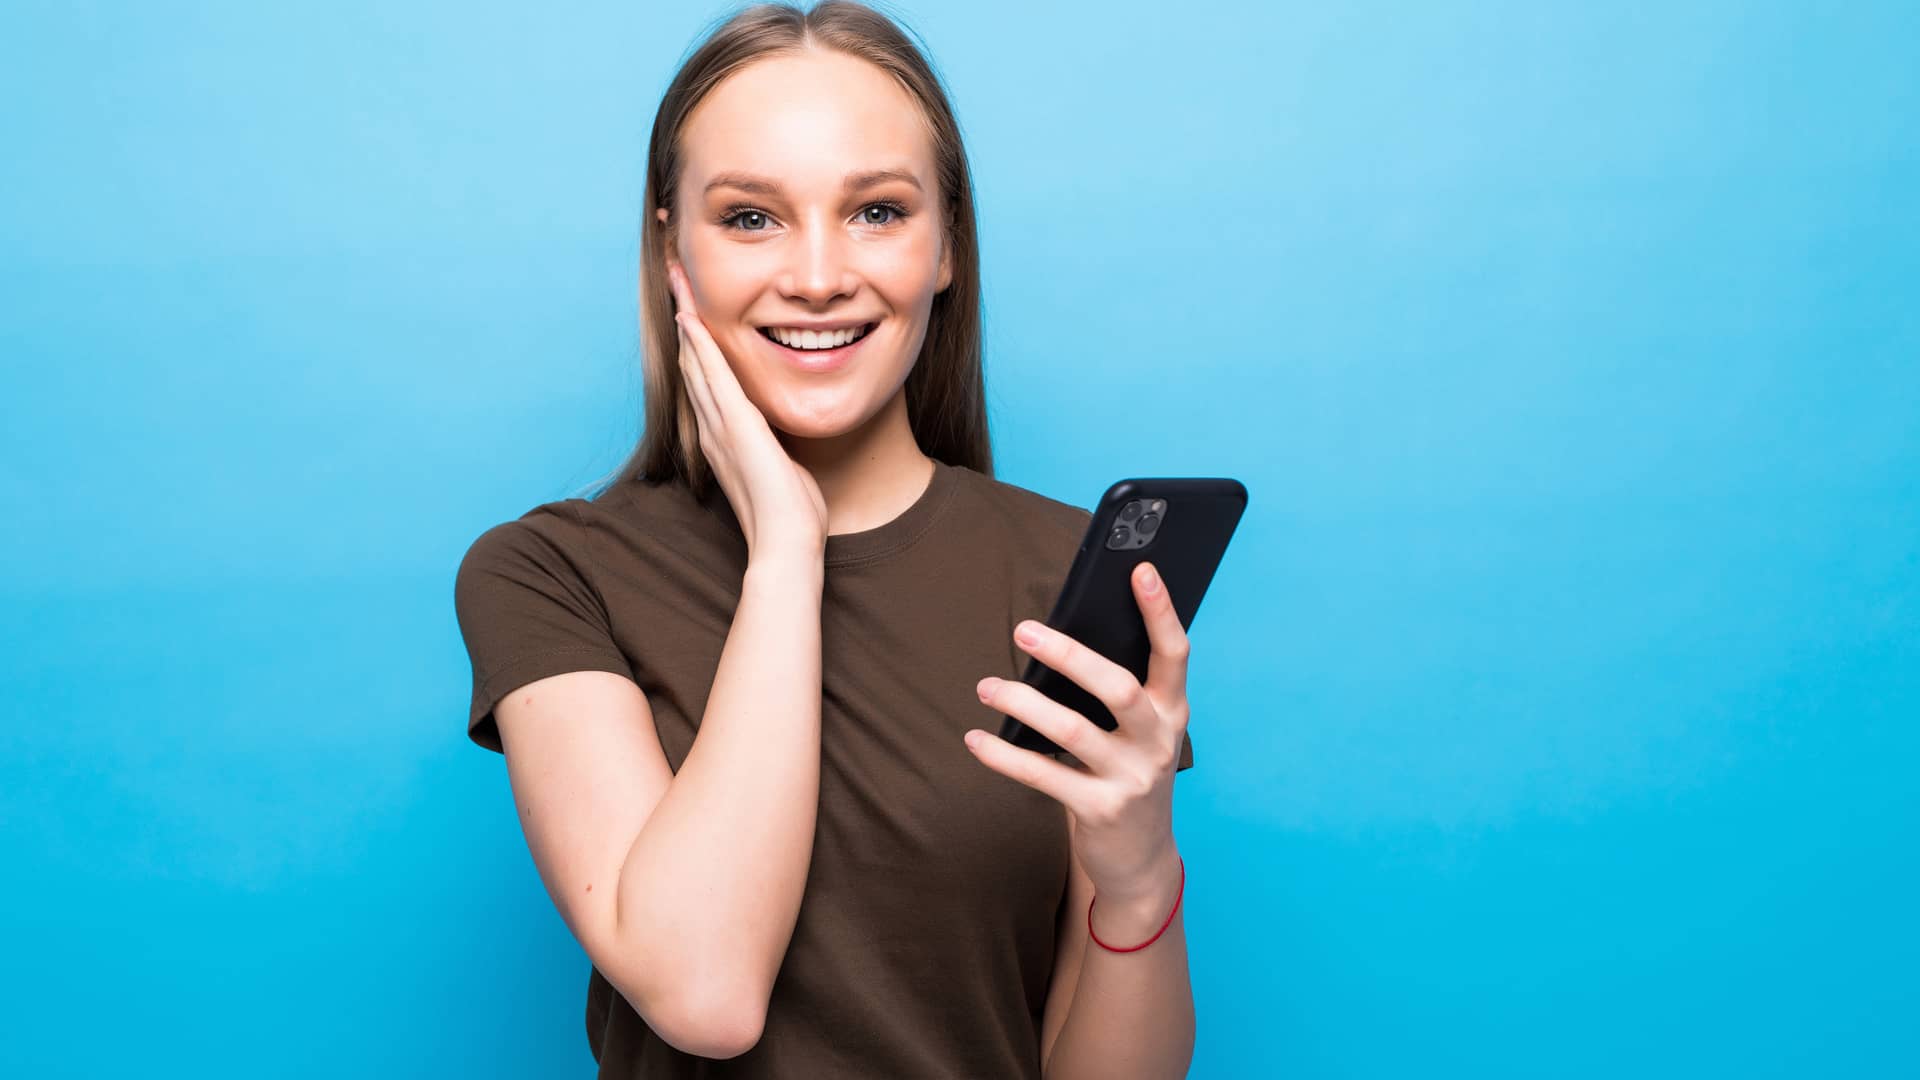 Adolescente contenta con su smartphone ha recibido una recarga de saldo a su tarifa prepago de lebara